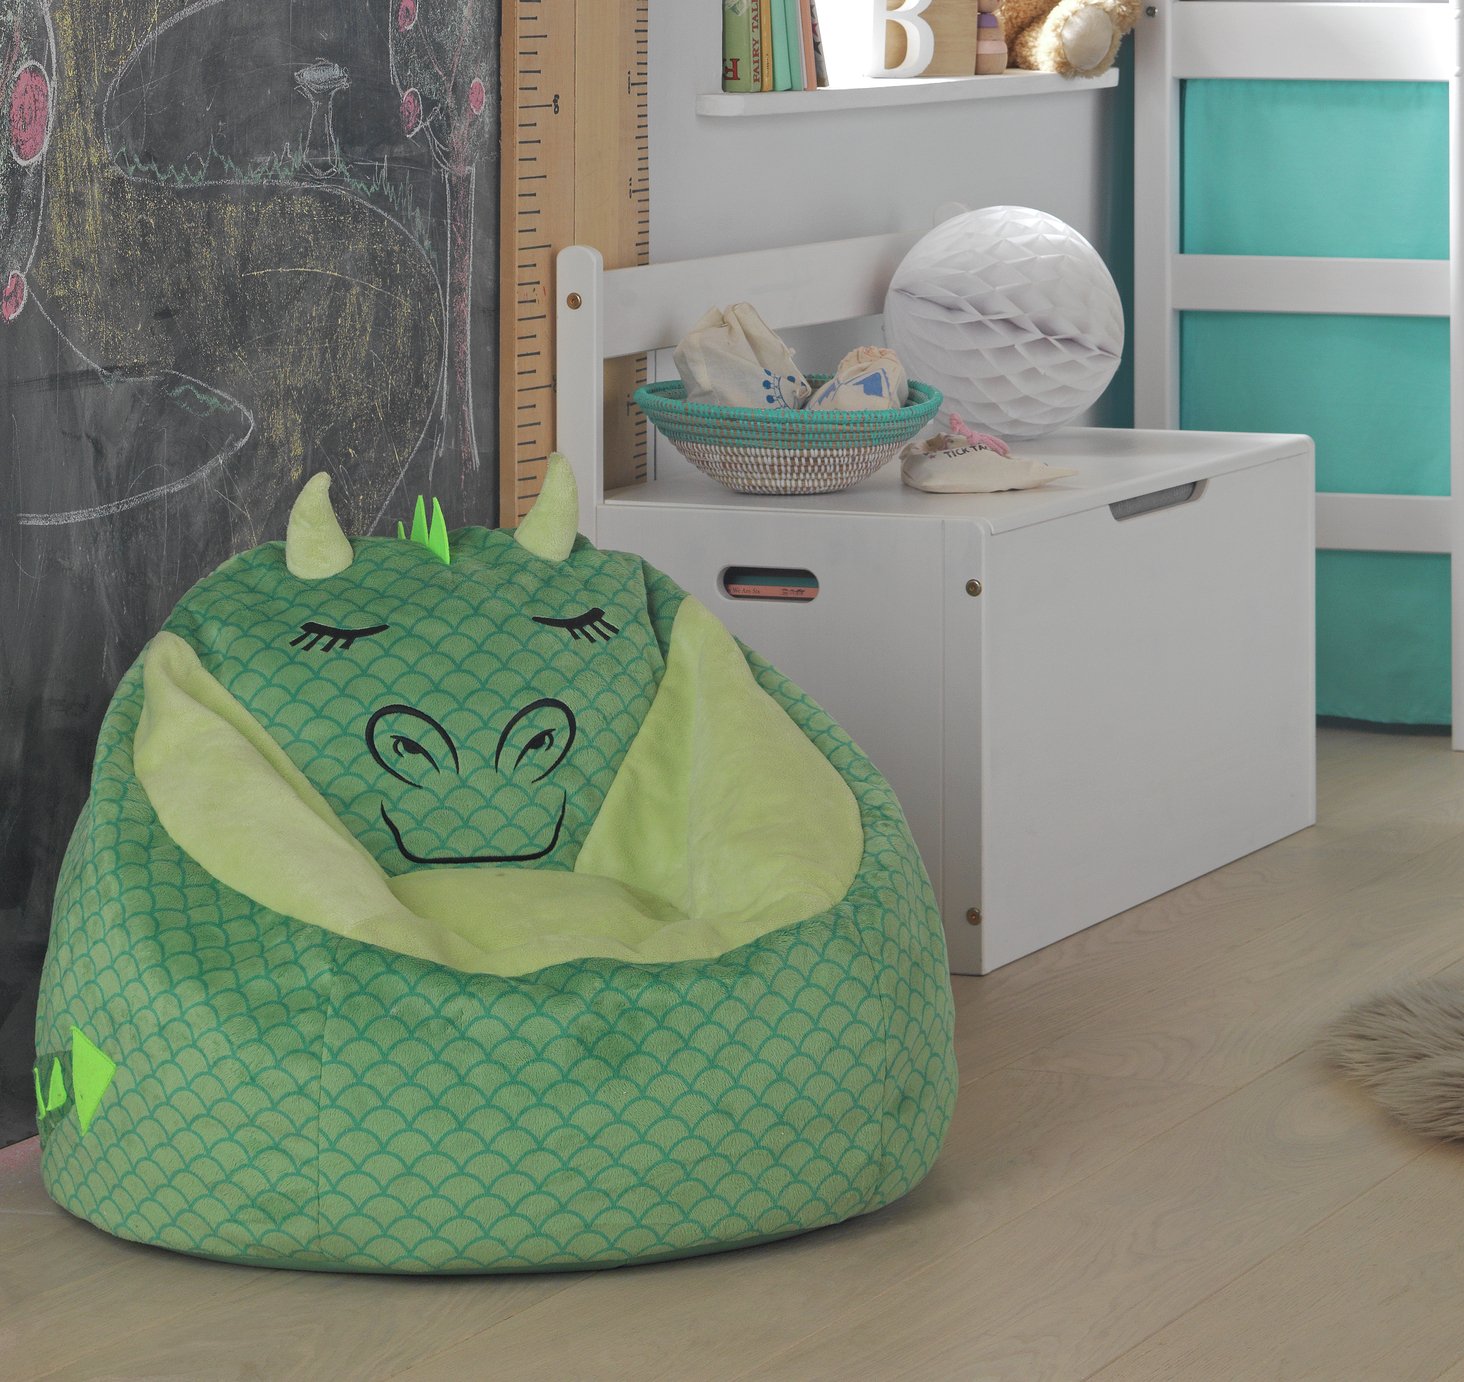 Argos Home Dragon Bean Bag Chair Review